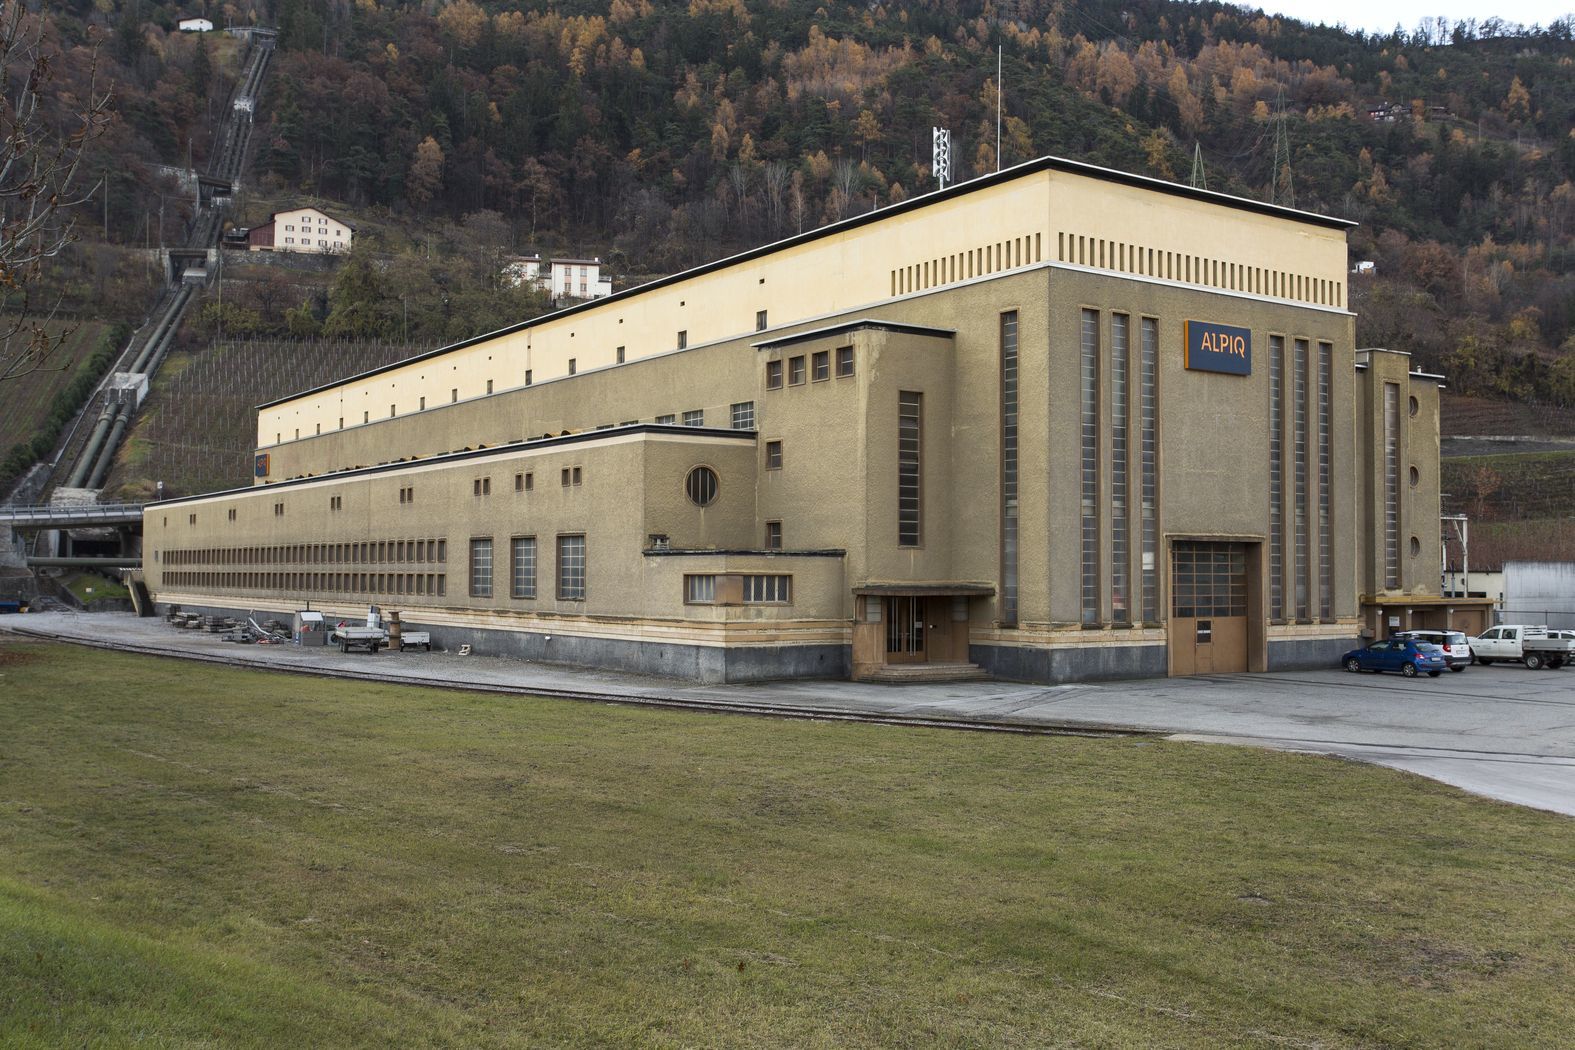 L’usine hydroélectrique de Chandoline (Daniele Buzzi, 1934) à Sion est remarquable pour la simplicité et l’élégance de ses formes. Un chef-d’œuvre moderne de l’époque des barrages.*